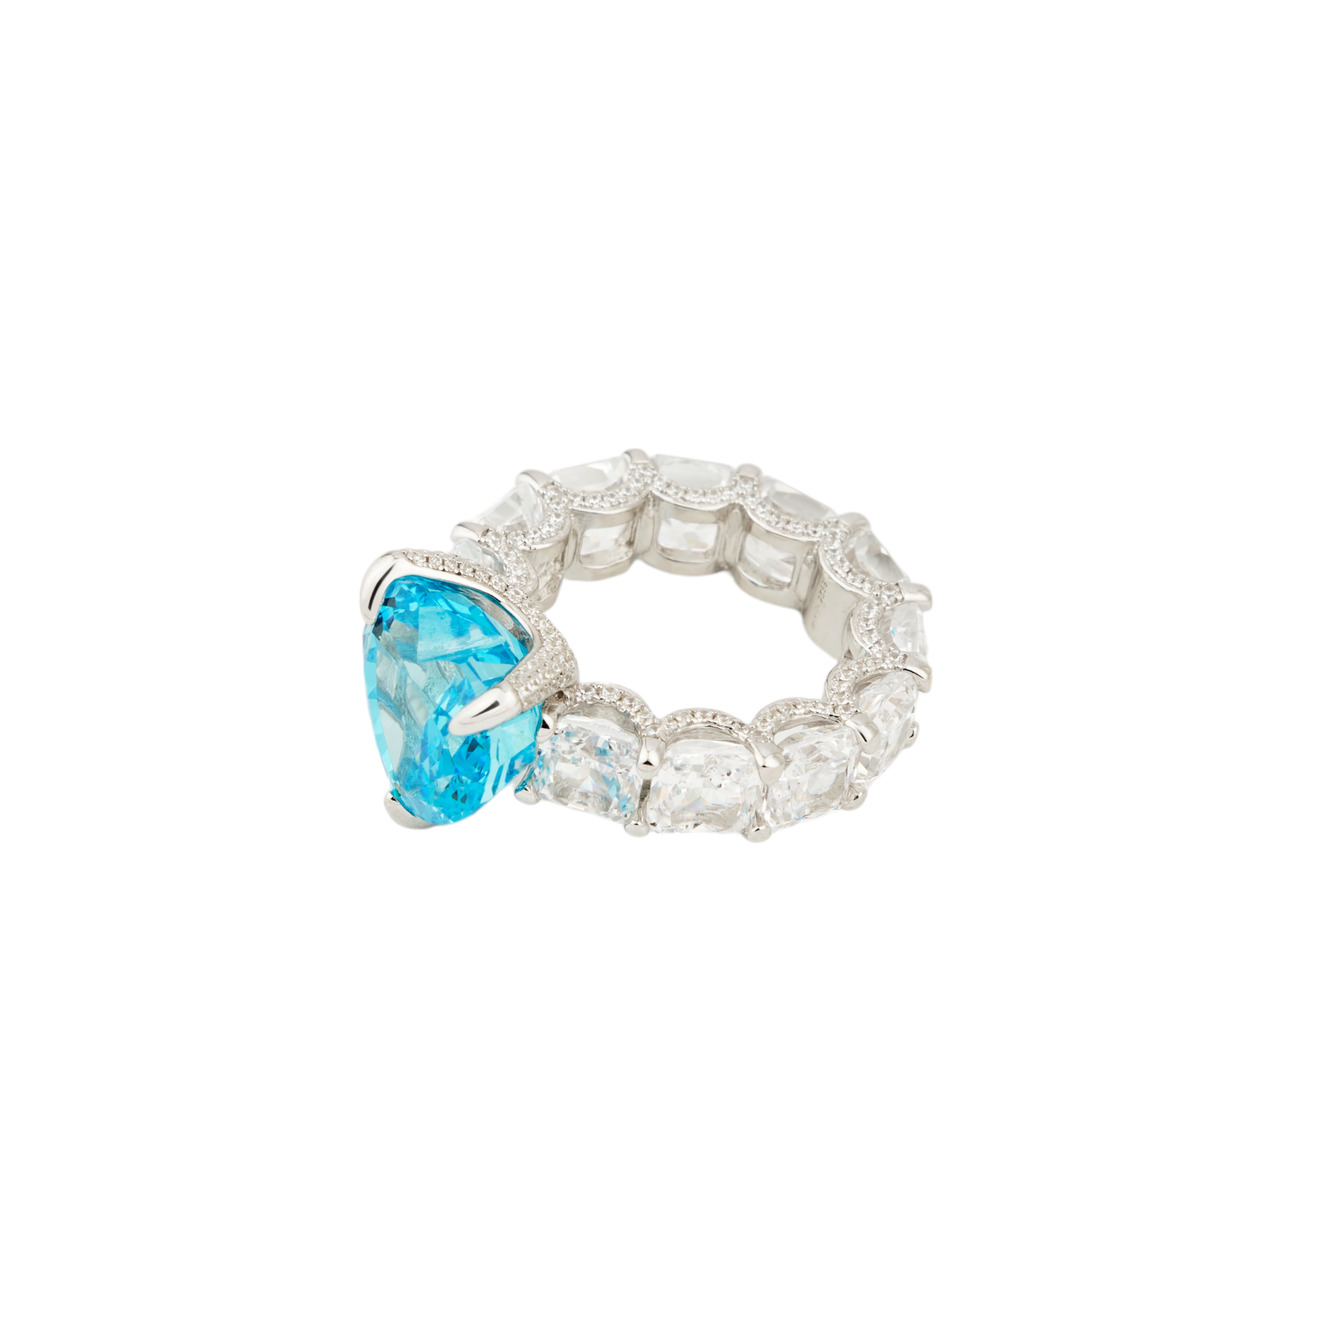 Holy Silver Кольцо из серебра с дорожкой из кристаллов и крупным голубым кристаллом сердце фото